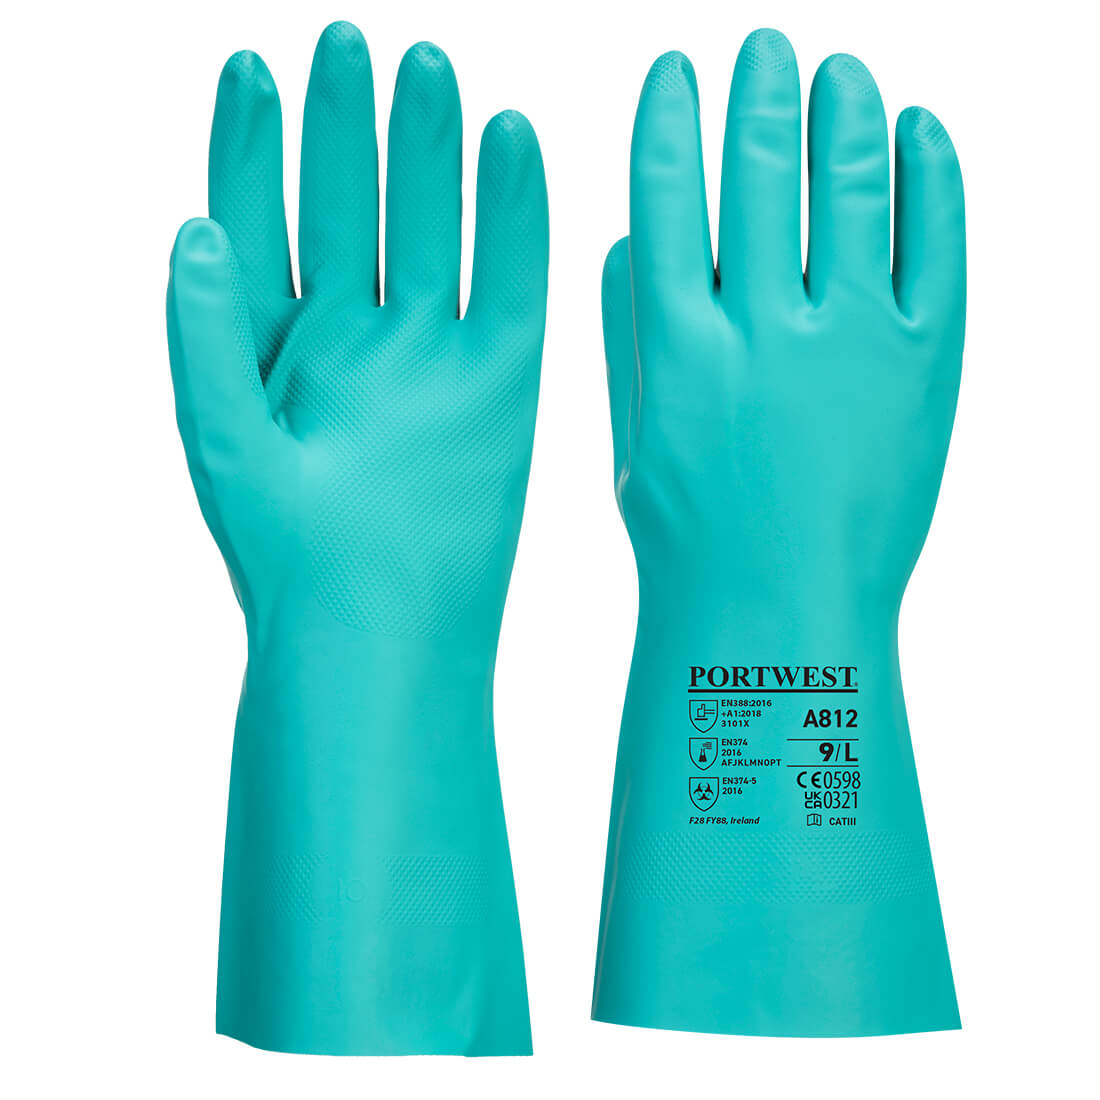 Portwest Nitrosafe Plus 330mm Nitrile Chemical Gauntlet Gloves Green - A812